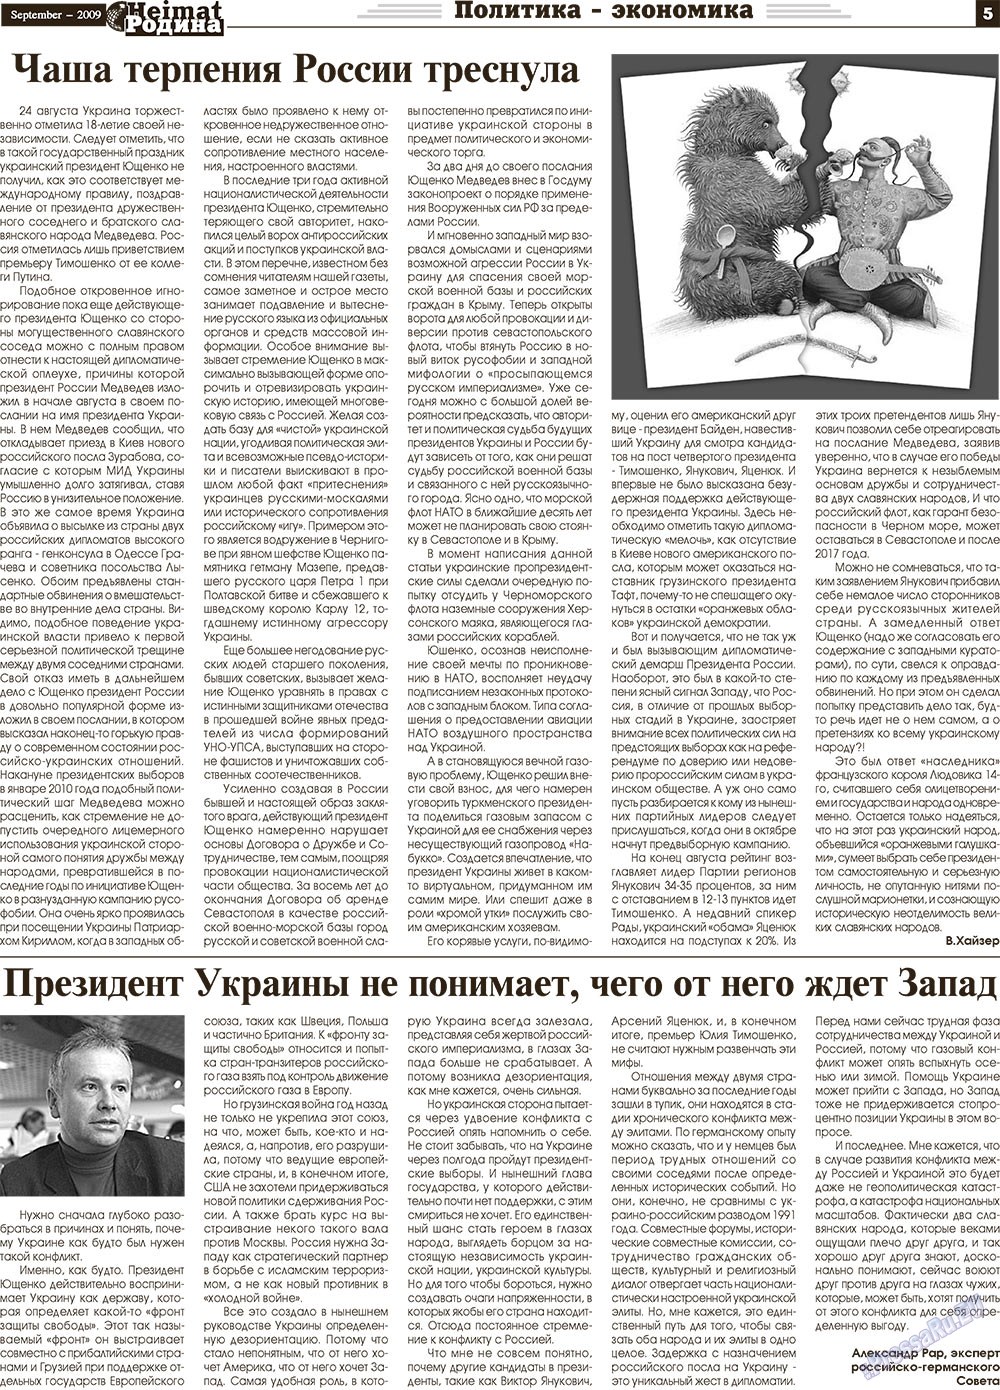 Heimat-Родина (газета). 2009 год, номер 9, стр. 5